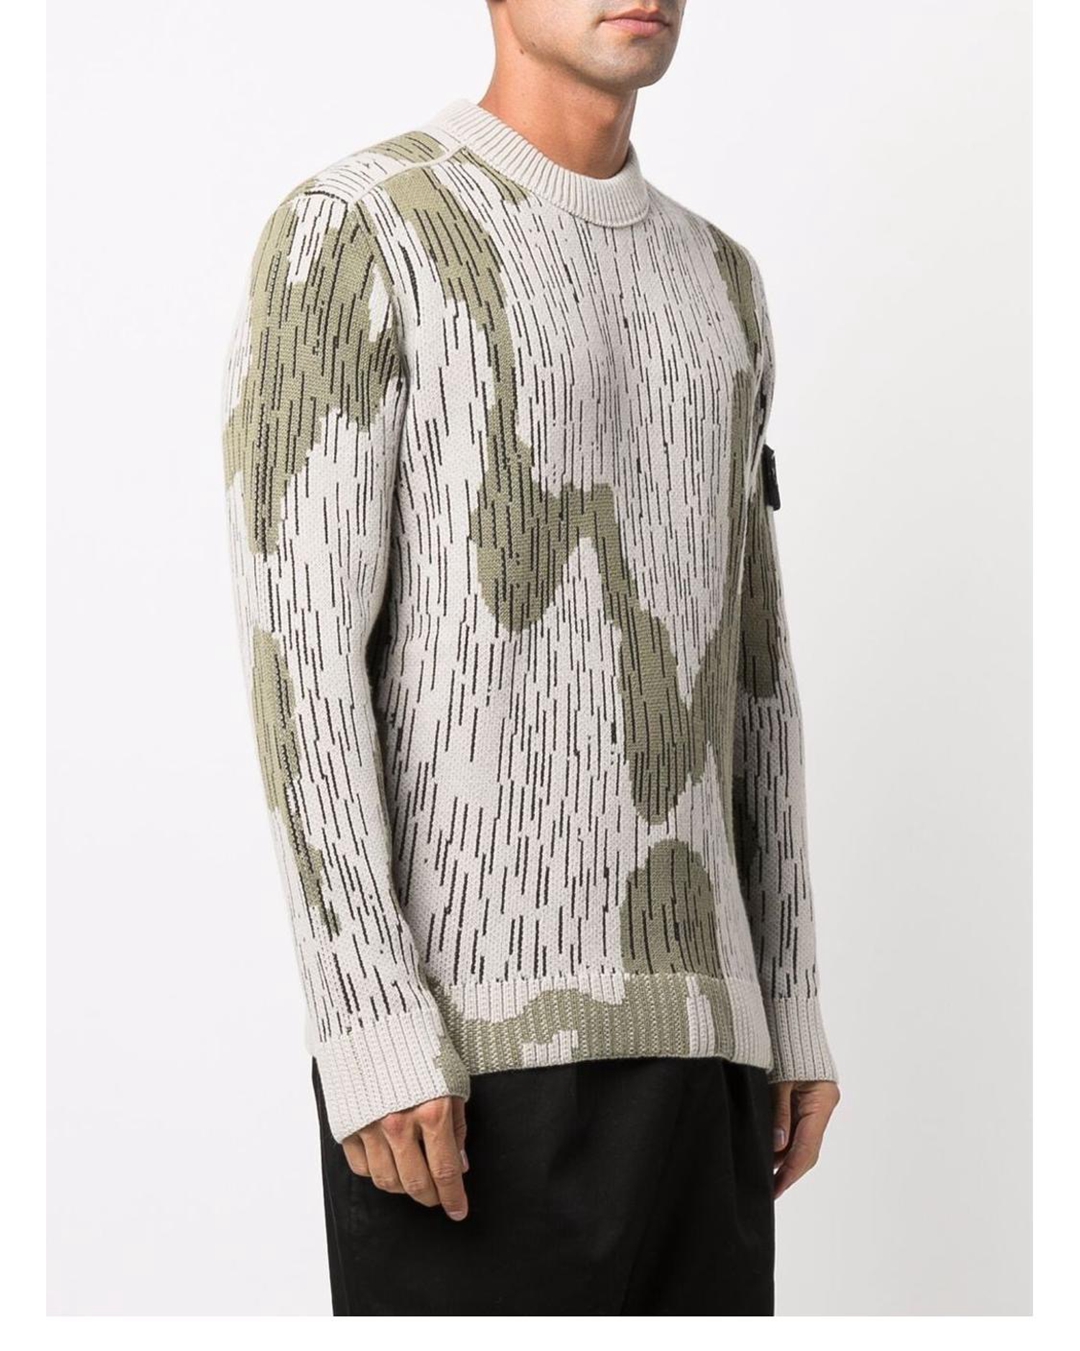 ストーンアイランド セーター メンズ ニットのセーター ファッション 快適性 正規品 22年秋冬新作